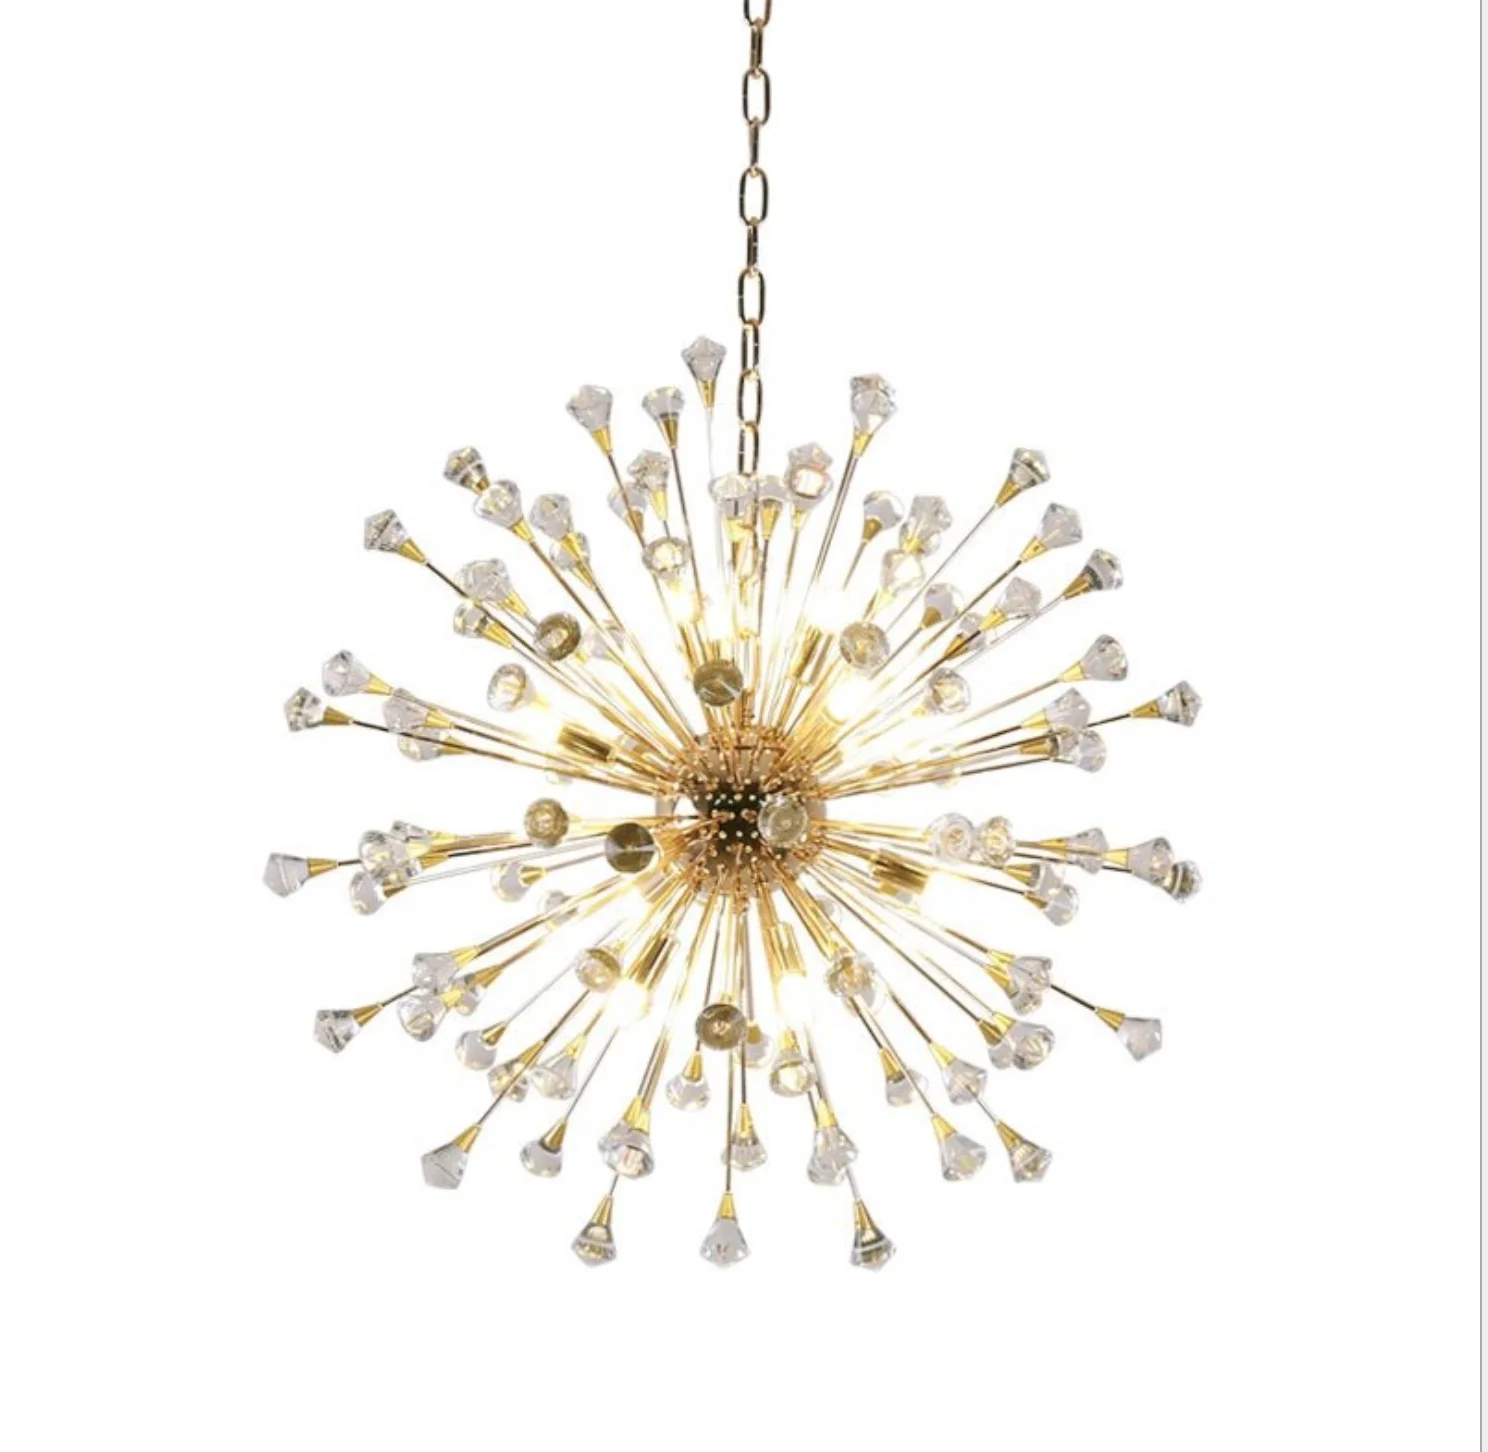 Hanging Adjustable Sputnik Led Crystal Modern Starburst Pendant Light Firework Chandelier Golden Hanging Adjustable Lamp